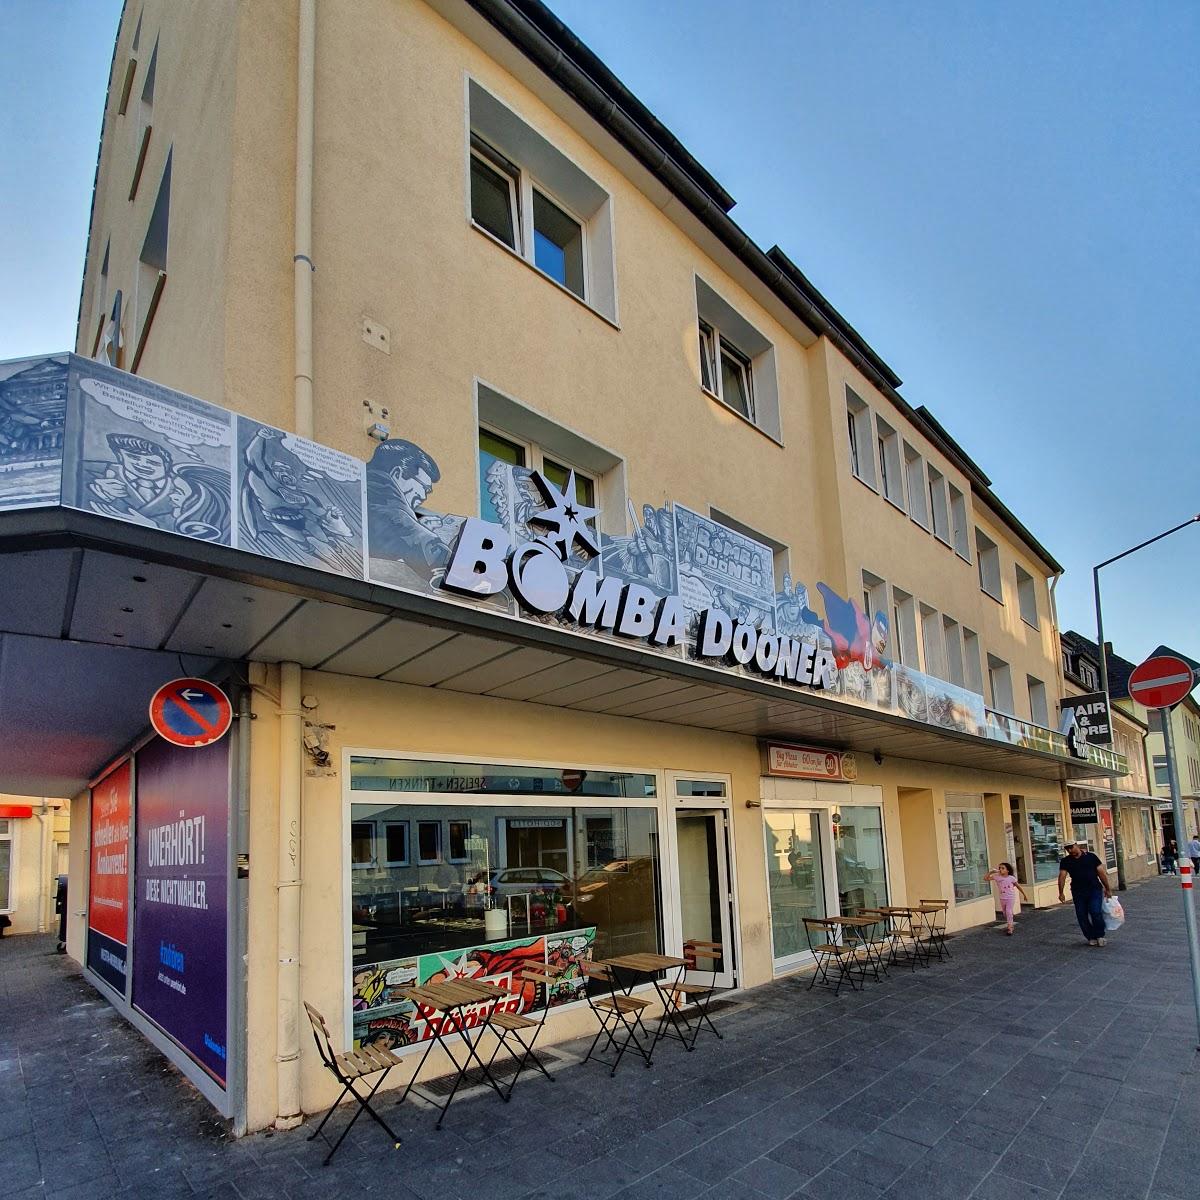 Restaurant "Bomba Dööner" in Paderborn